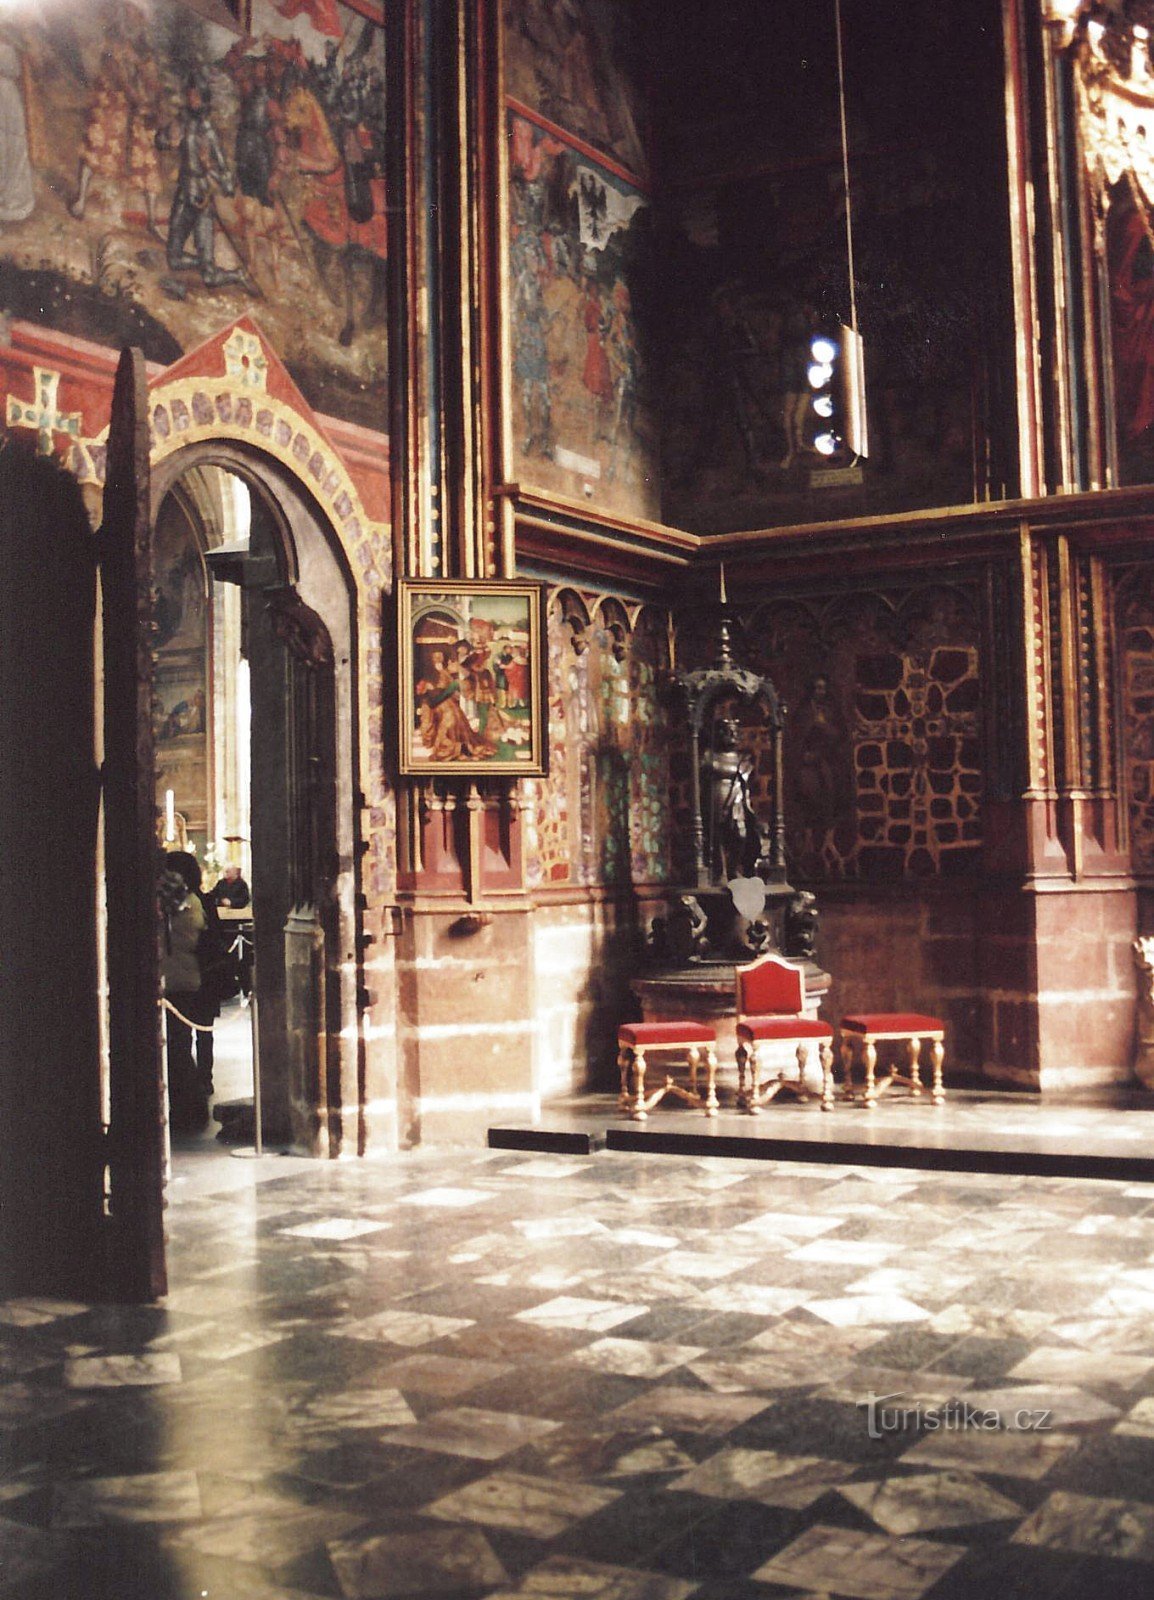 Prag - Kapellet St. Wenceslas, Centraleuropas mest värdefulla konstnärliga skatt